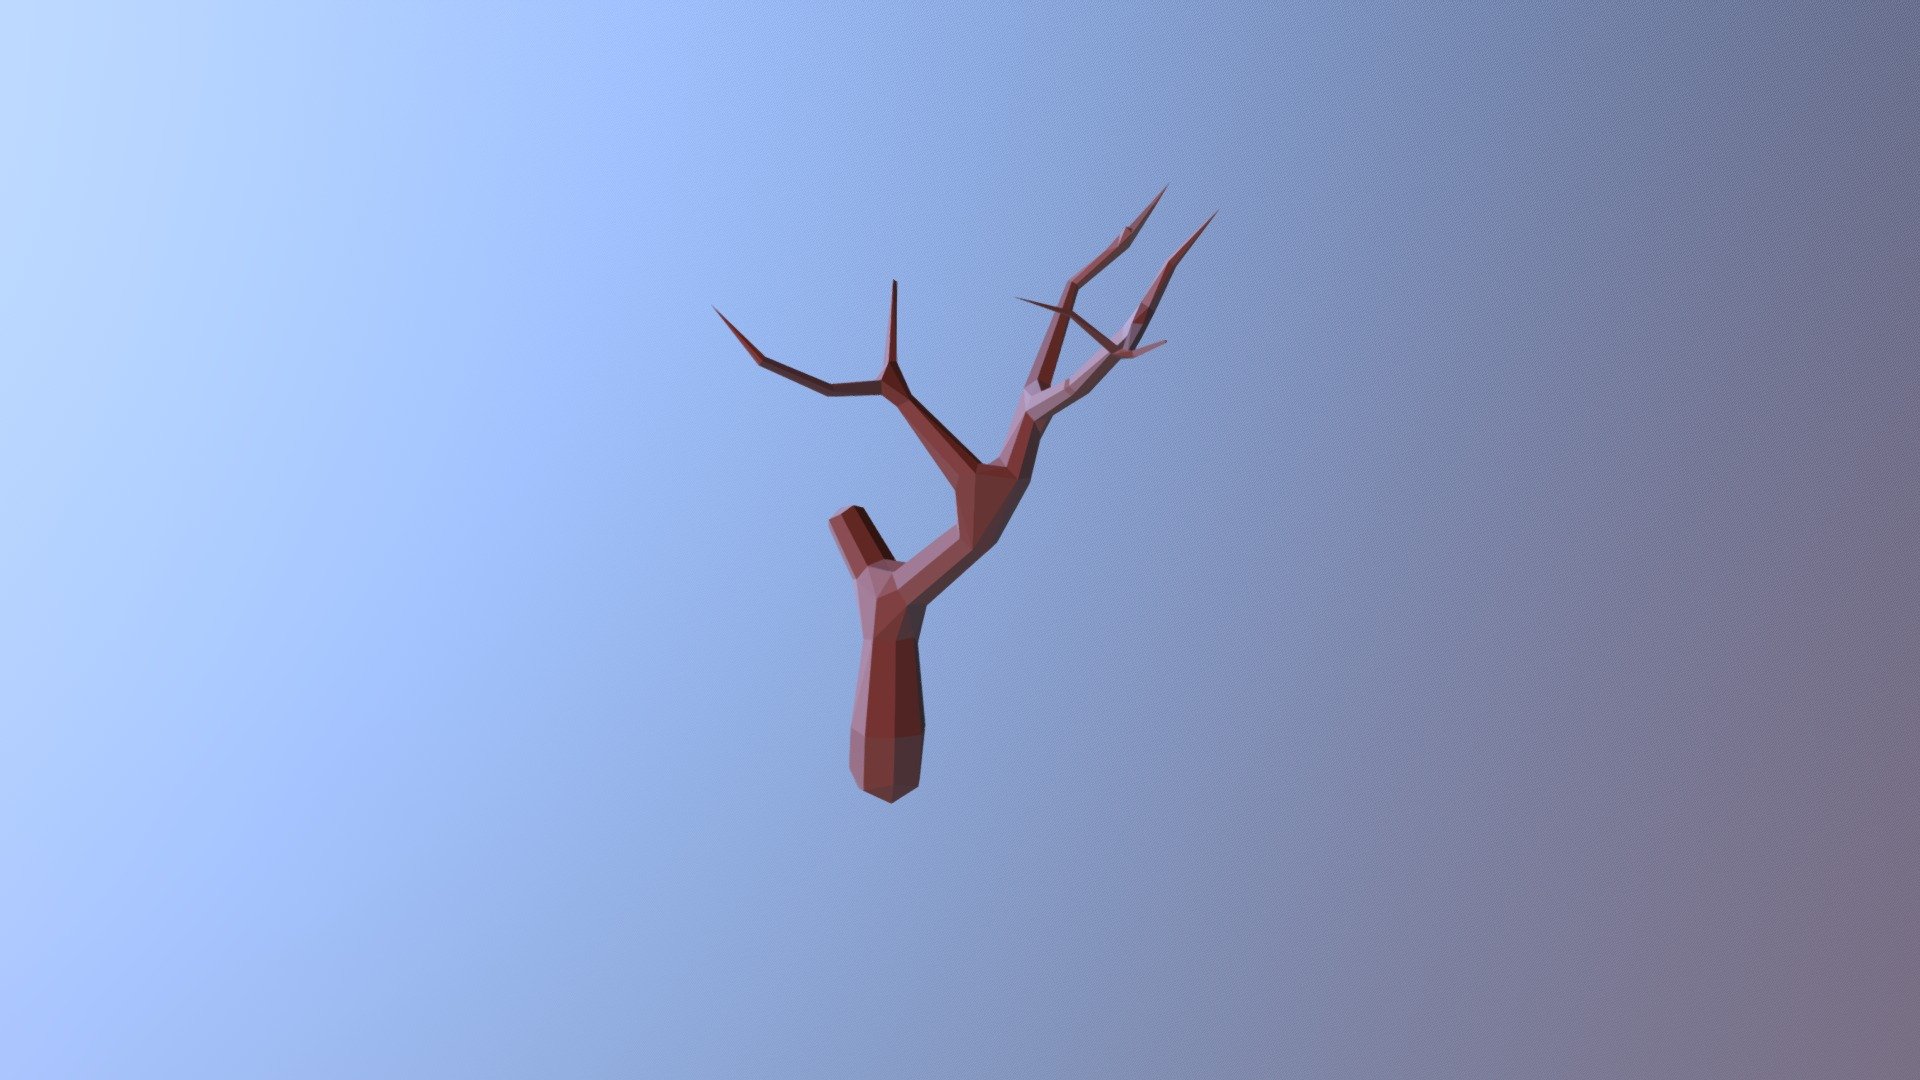 Low Poly Dead Tree - 3D model by dvnc.tech 3d model